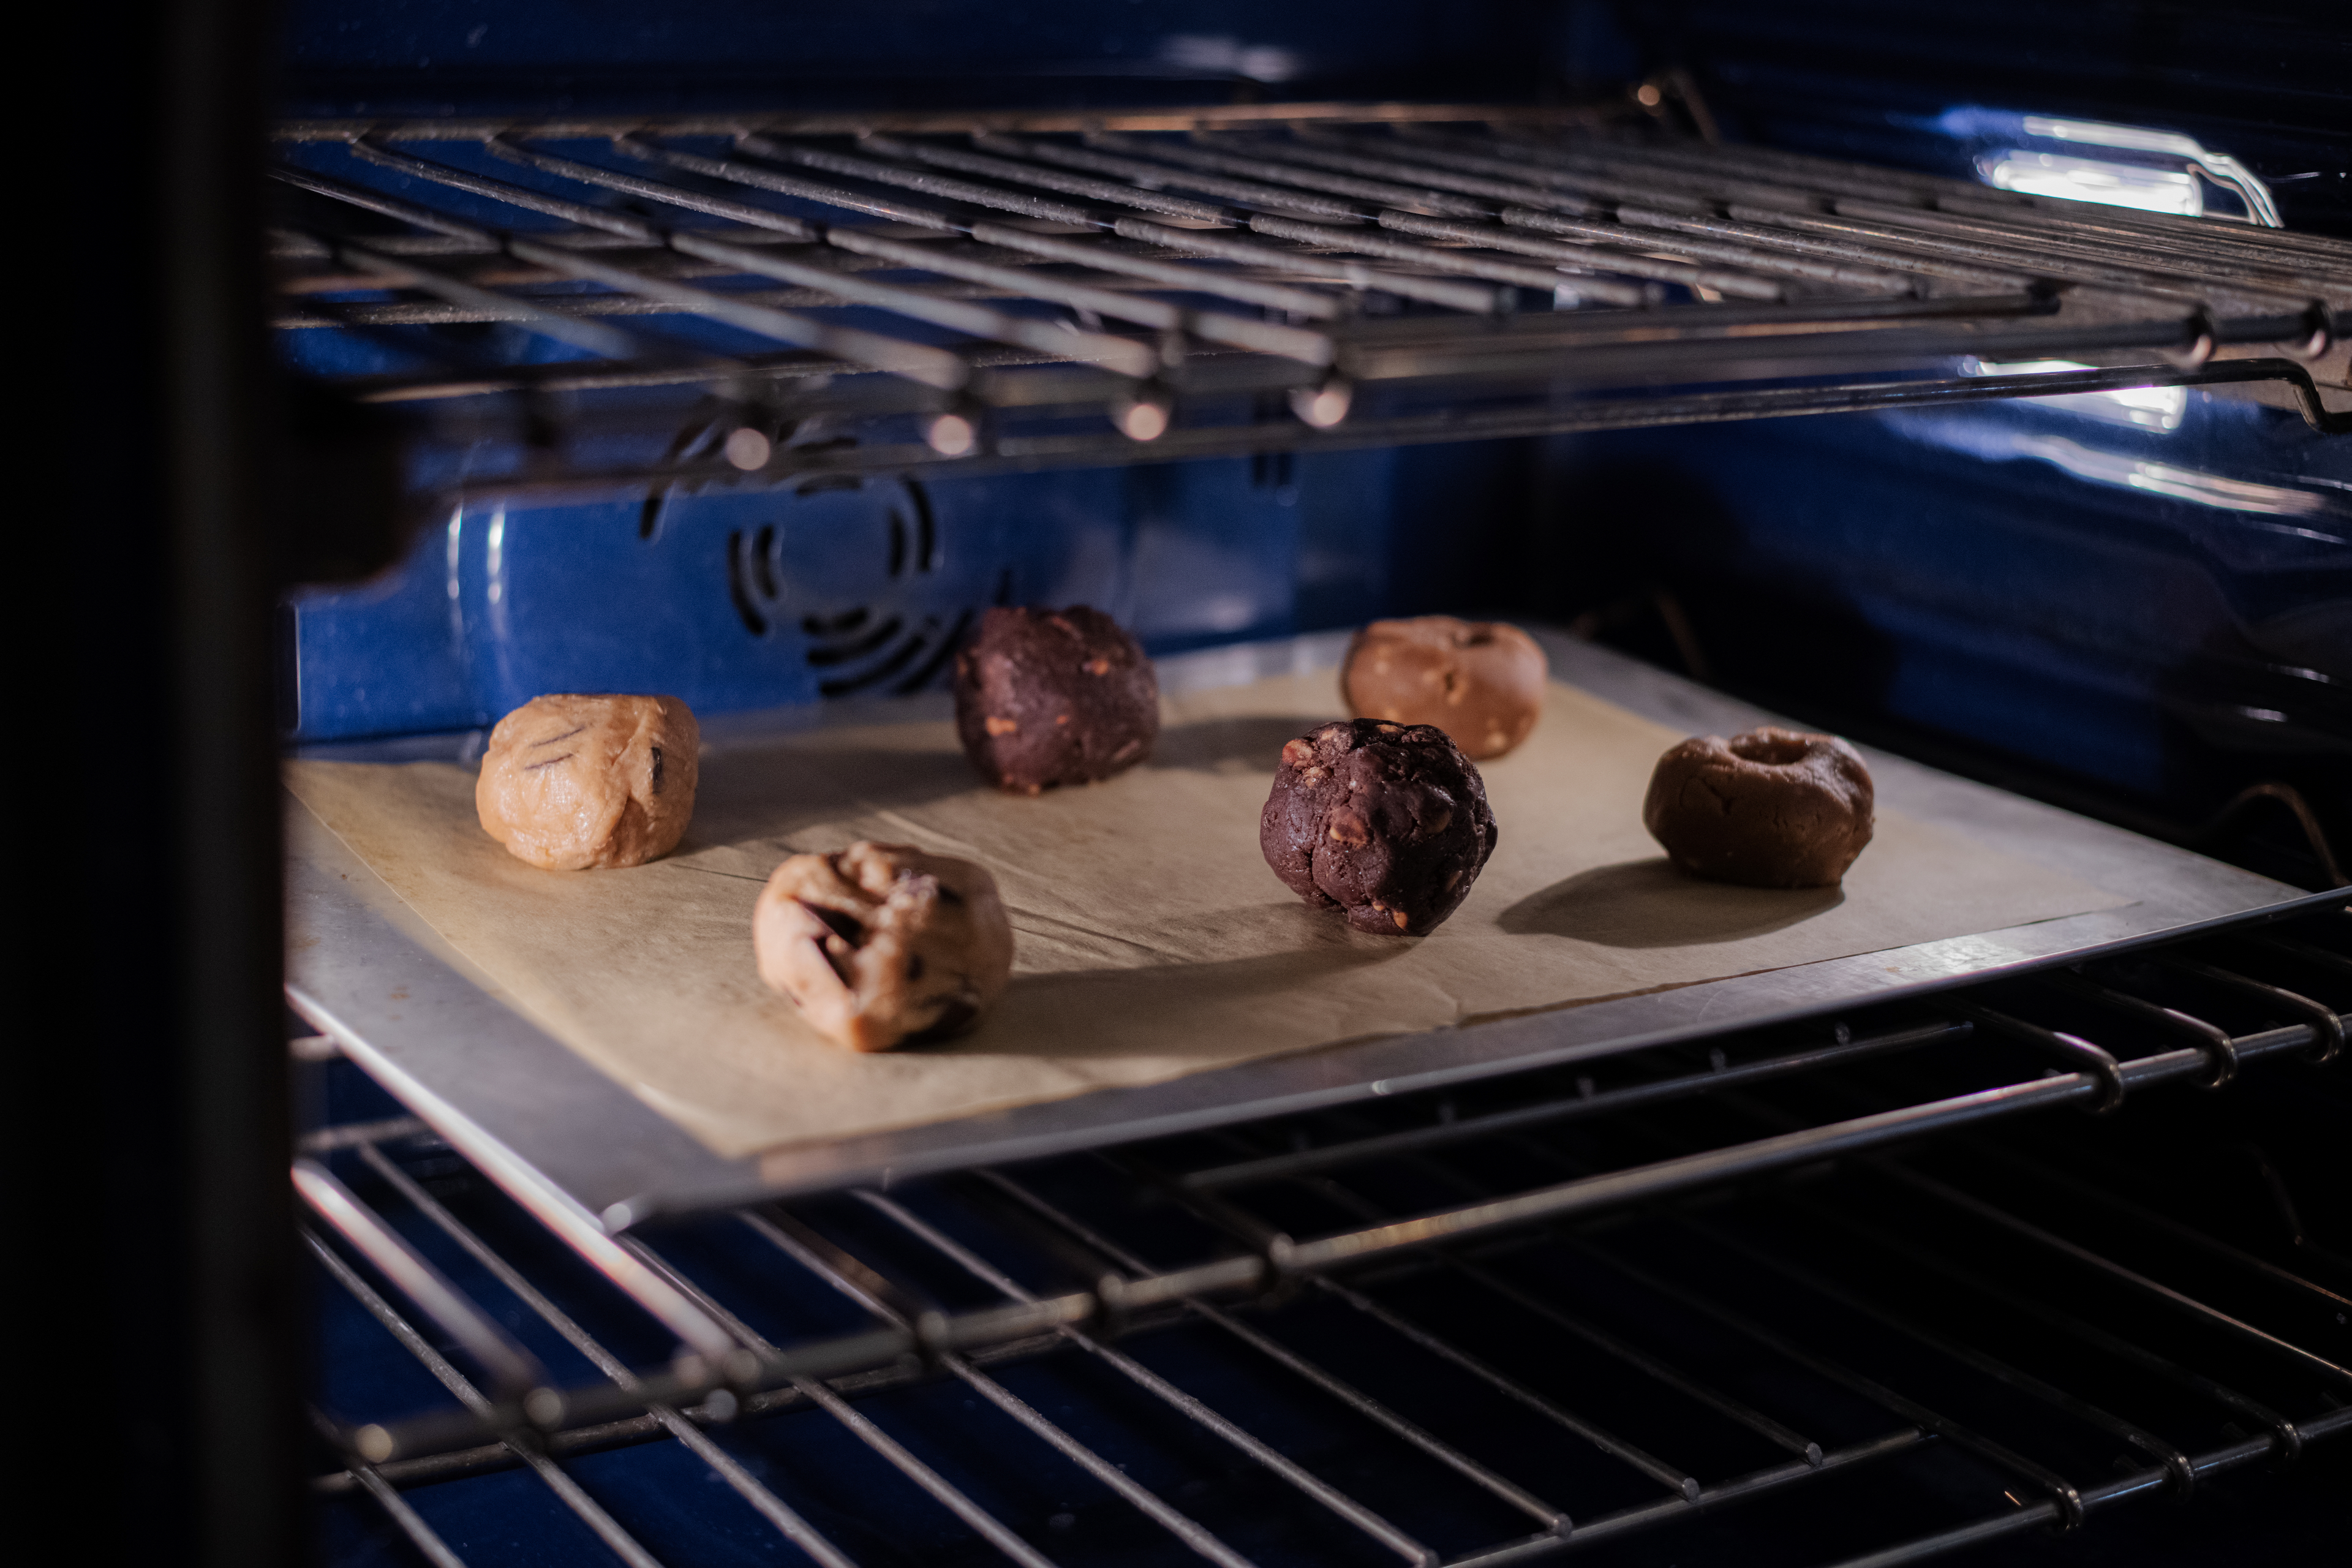 Preformed Cookie Dough Balls Baking in Oven